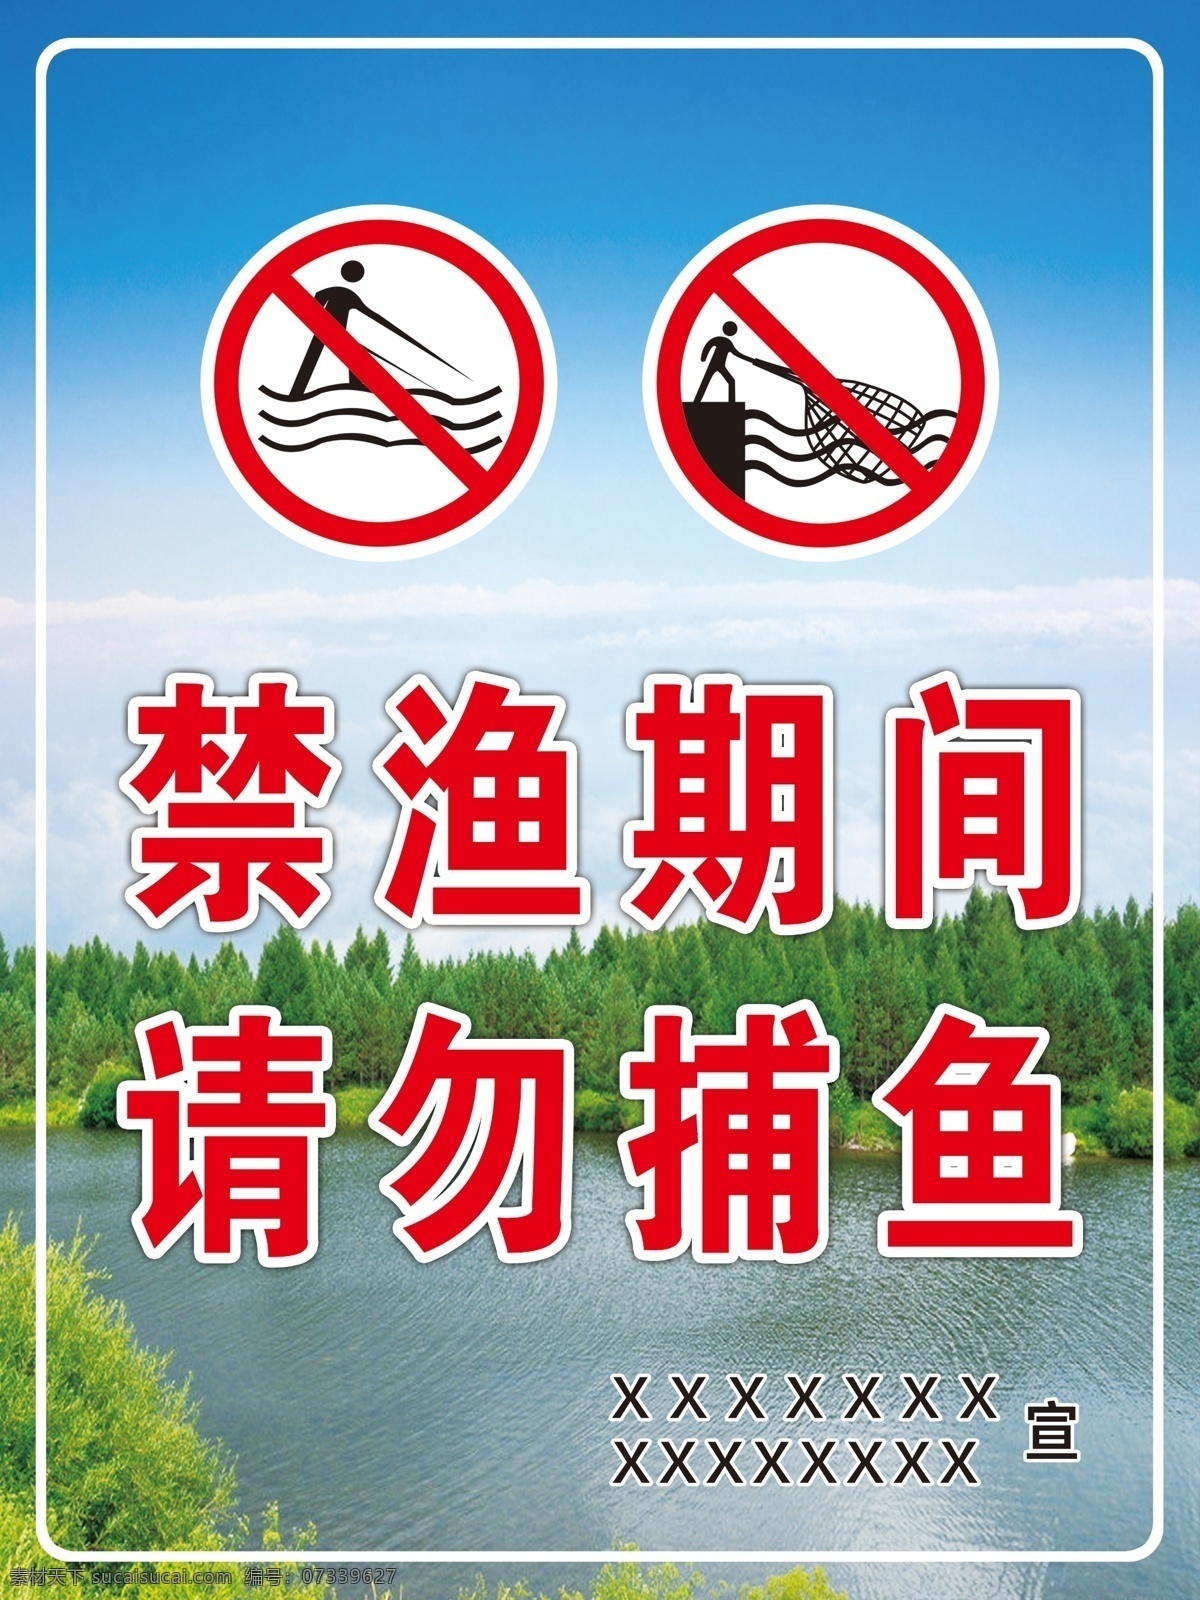 请勿捕鱼 保持水生态 禁渔标语 禁止捕捞鱼